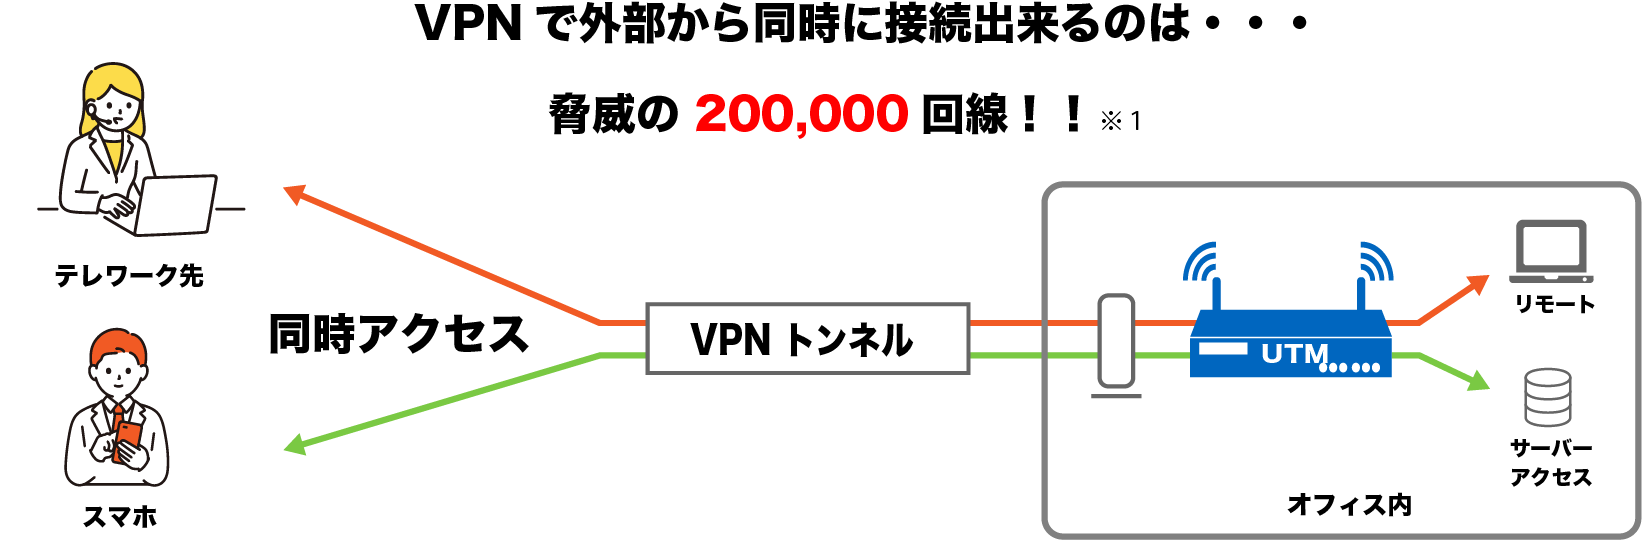 VPN同時接続人数